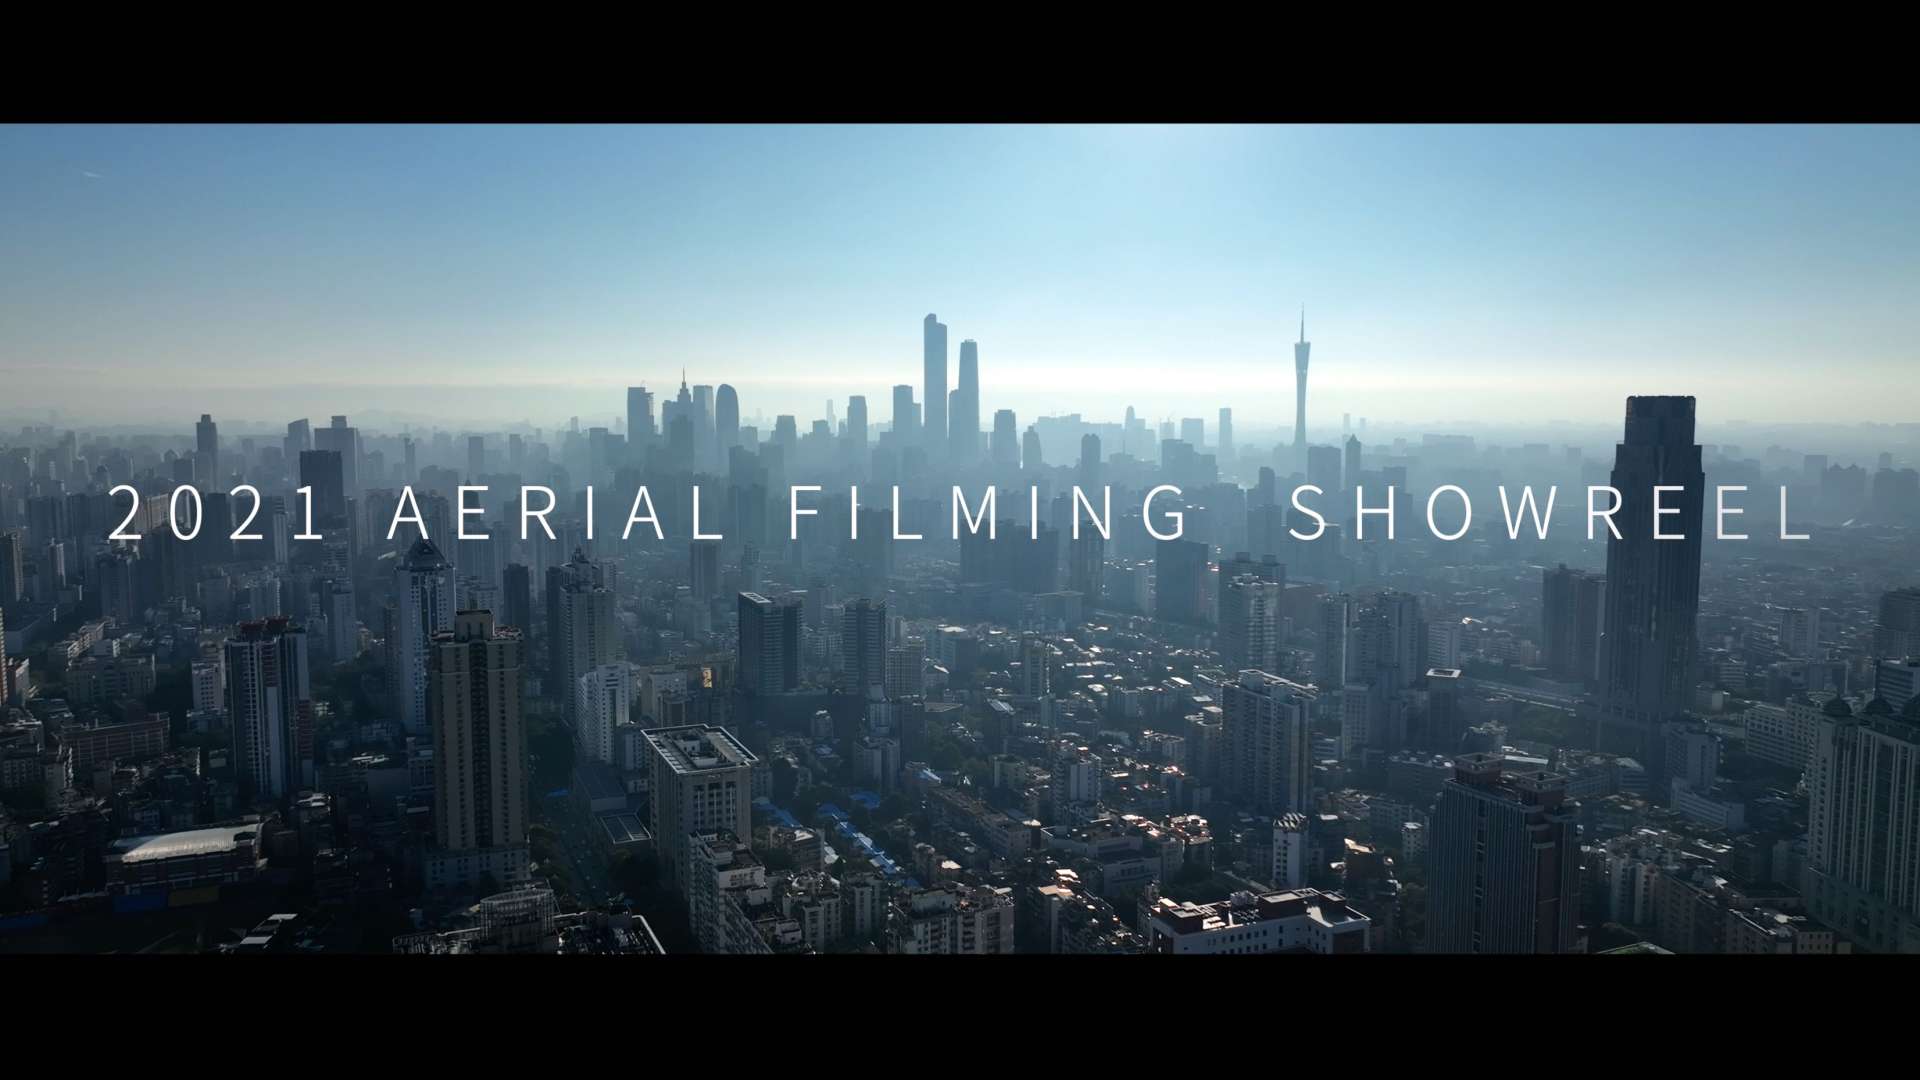 2021 Aerial Filming Showreel